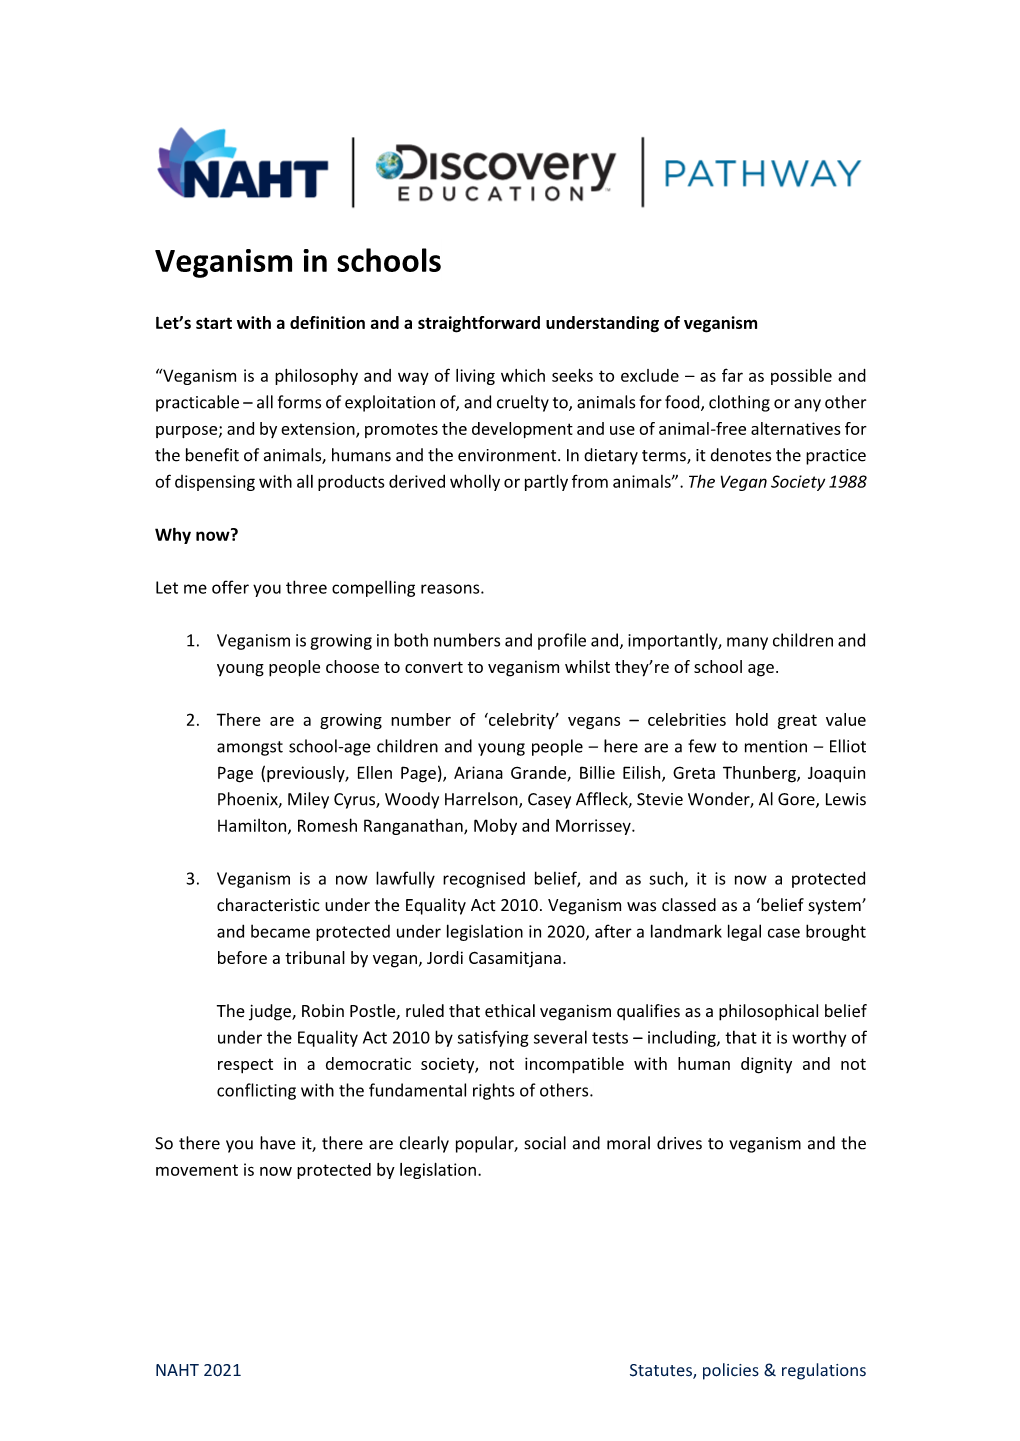 Veganism in Schools